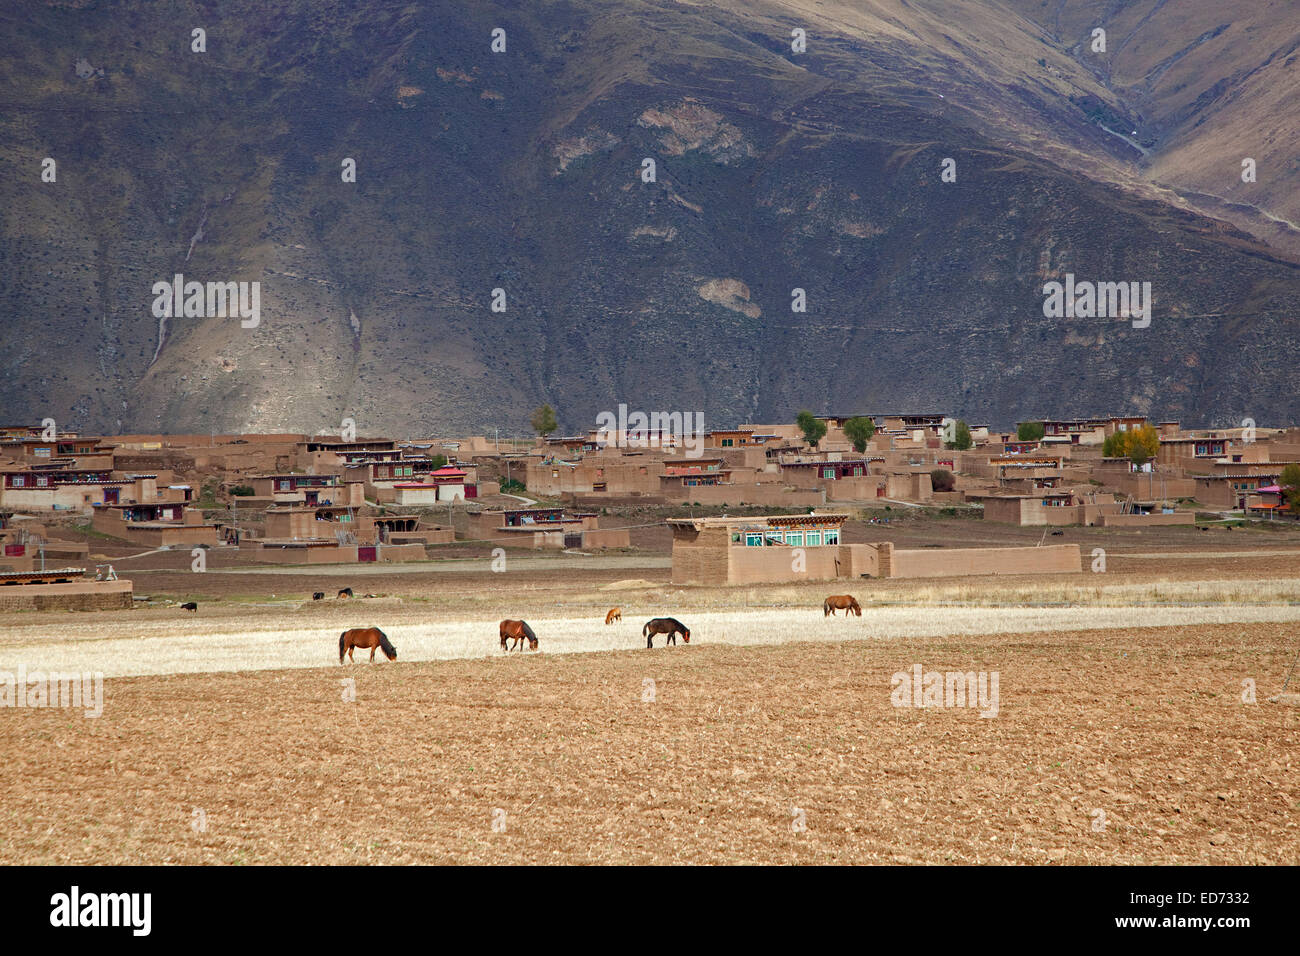 Village rural avec les chevaux entre les Zhuqing et Ganzi dans l'himalaya le long de la route Sichuan-Tibet, province du Sichuan, Chine Banque D'Images